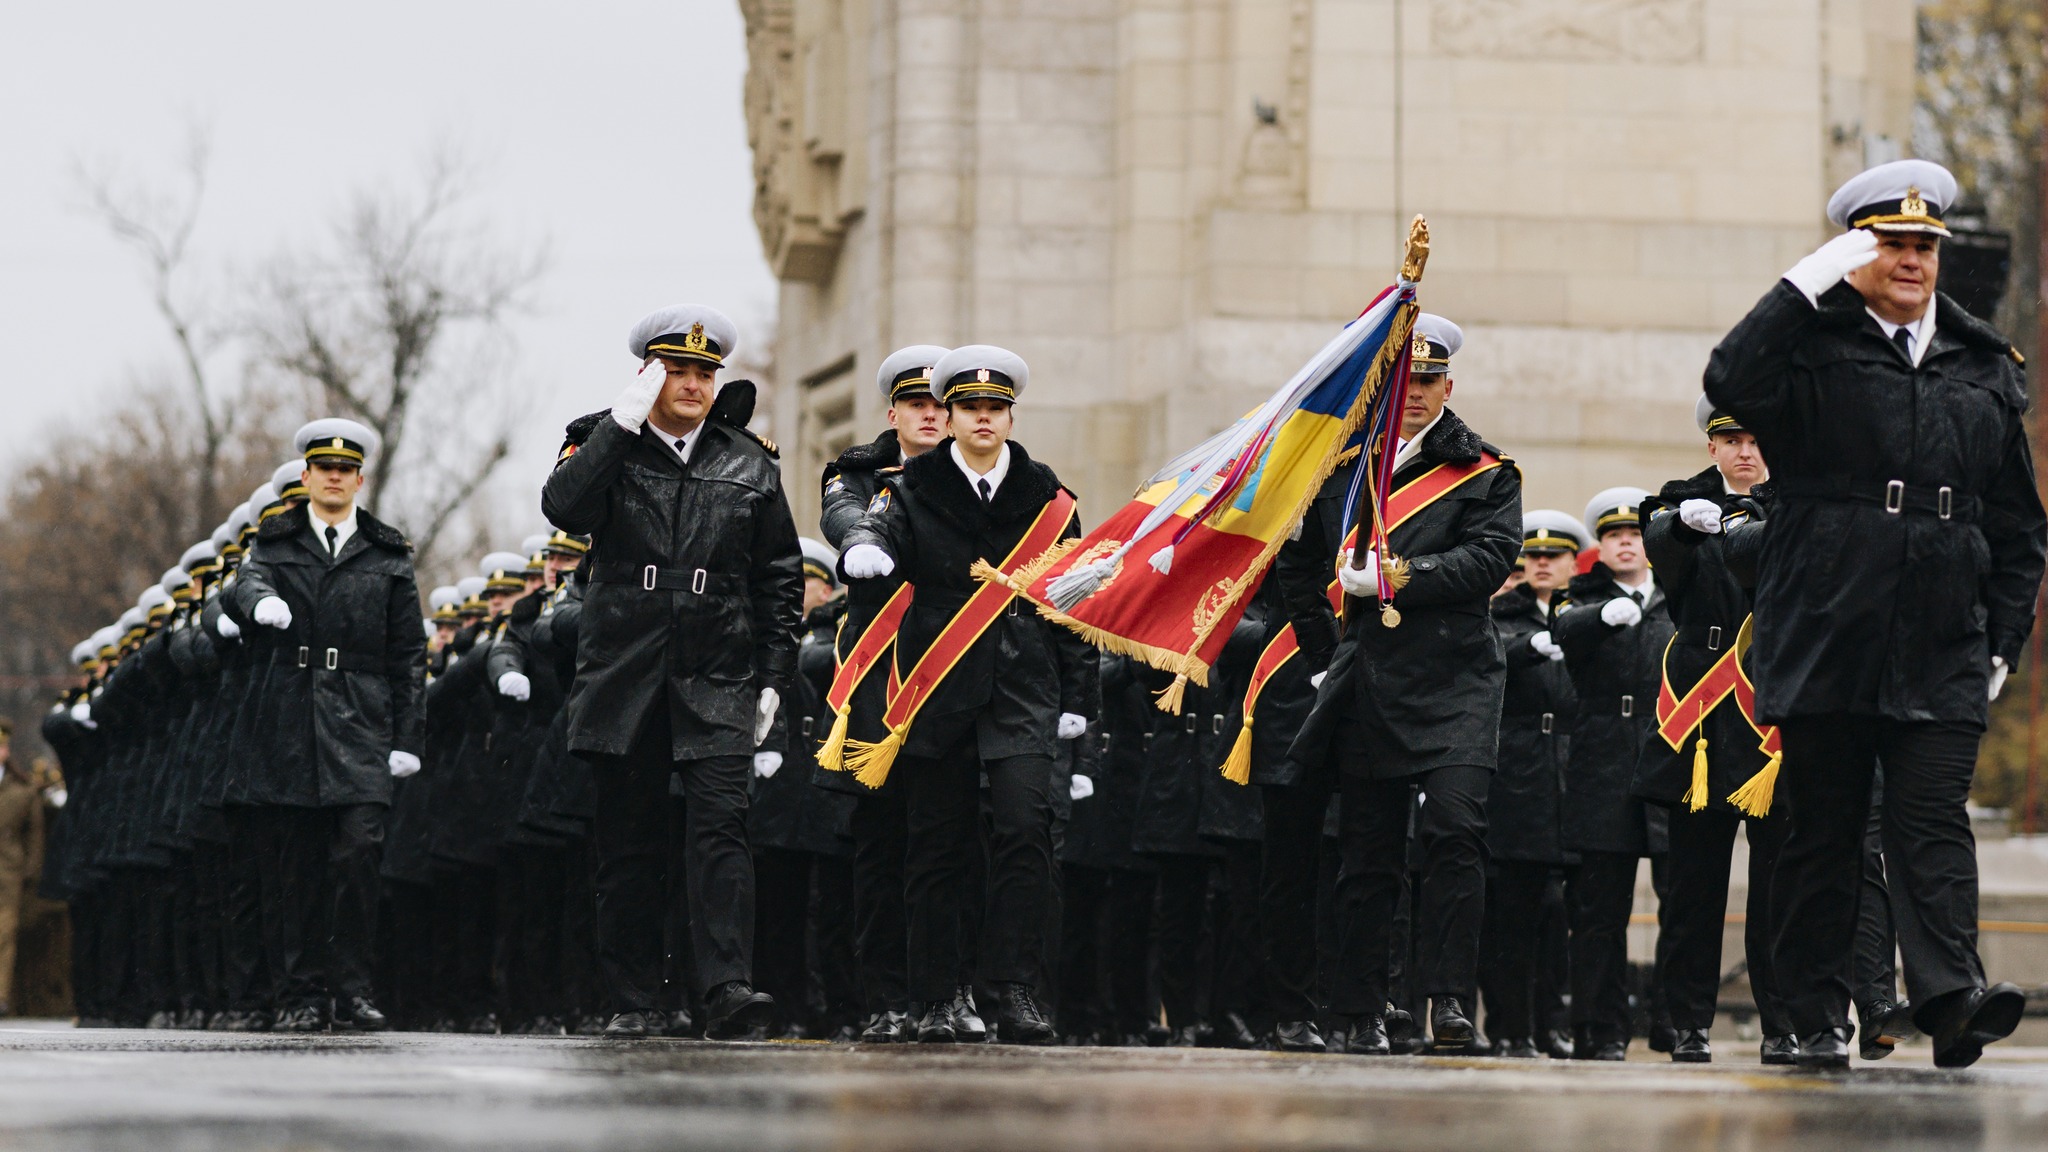 (ФОТО) Молдавские военные приняли участие в параде в Бухаресте по случаю Дня национального единения Румынии